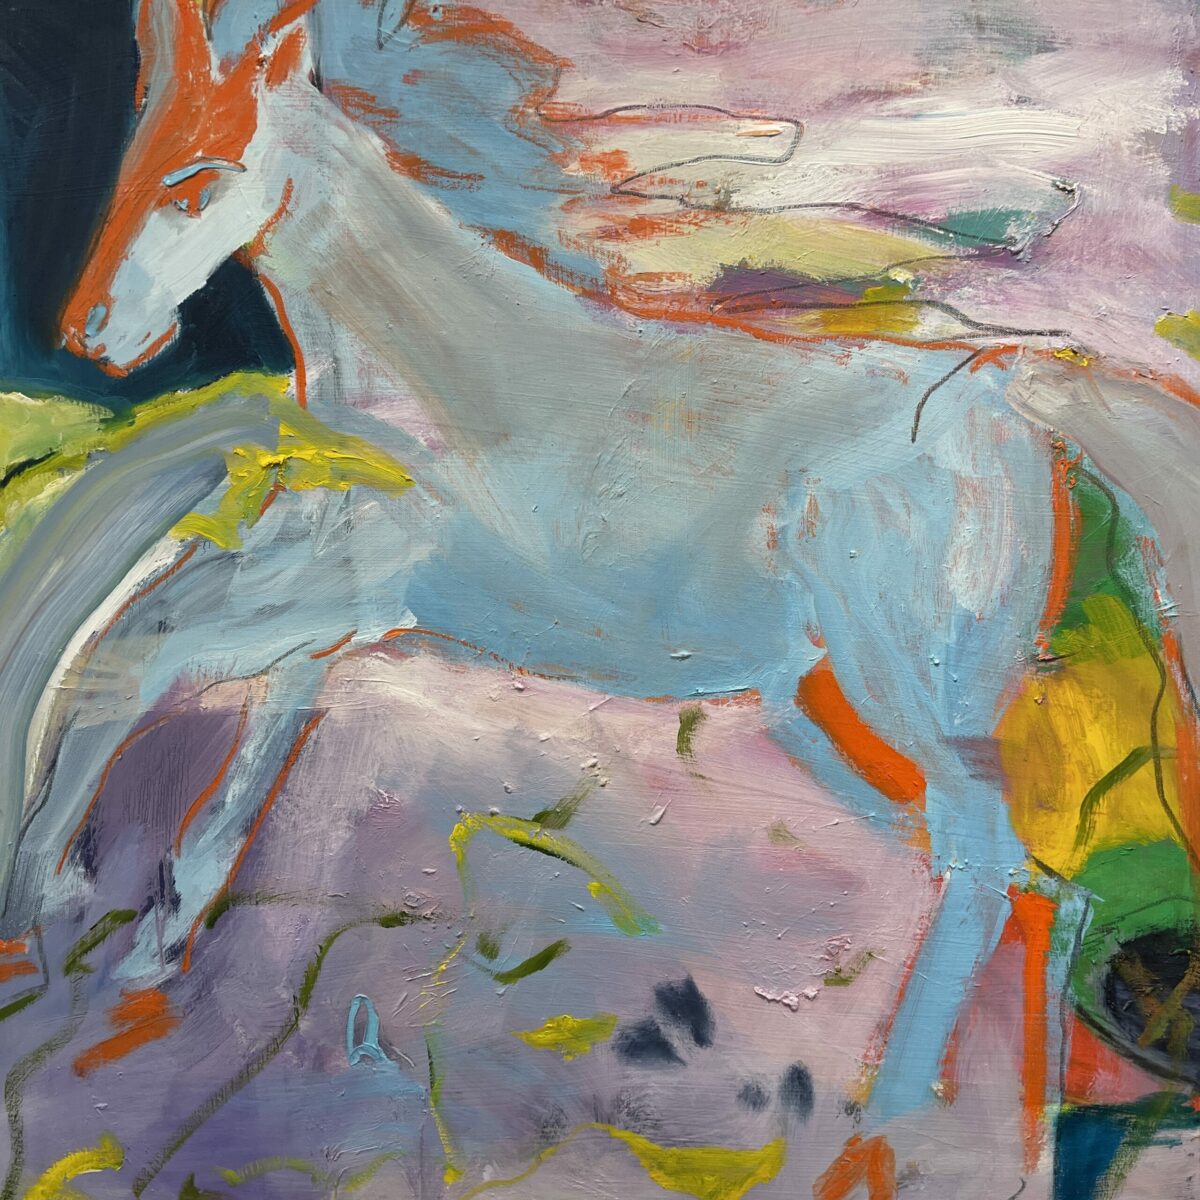 Alicia Sampson Ethridge, Epona I, Oil on canvas, 36 x 36 inches, 2022